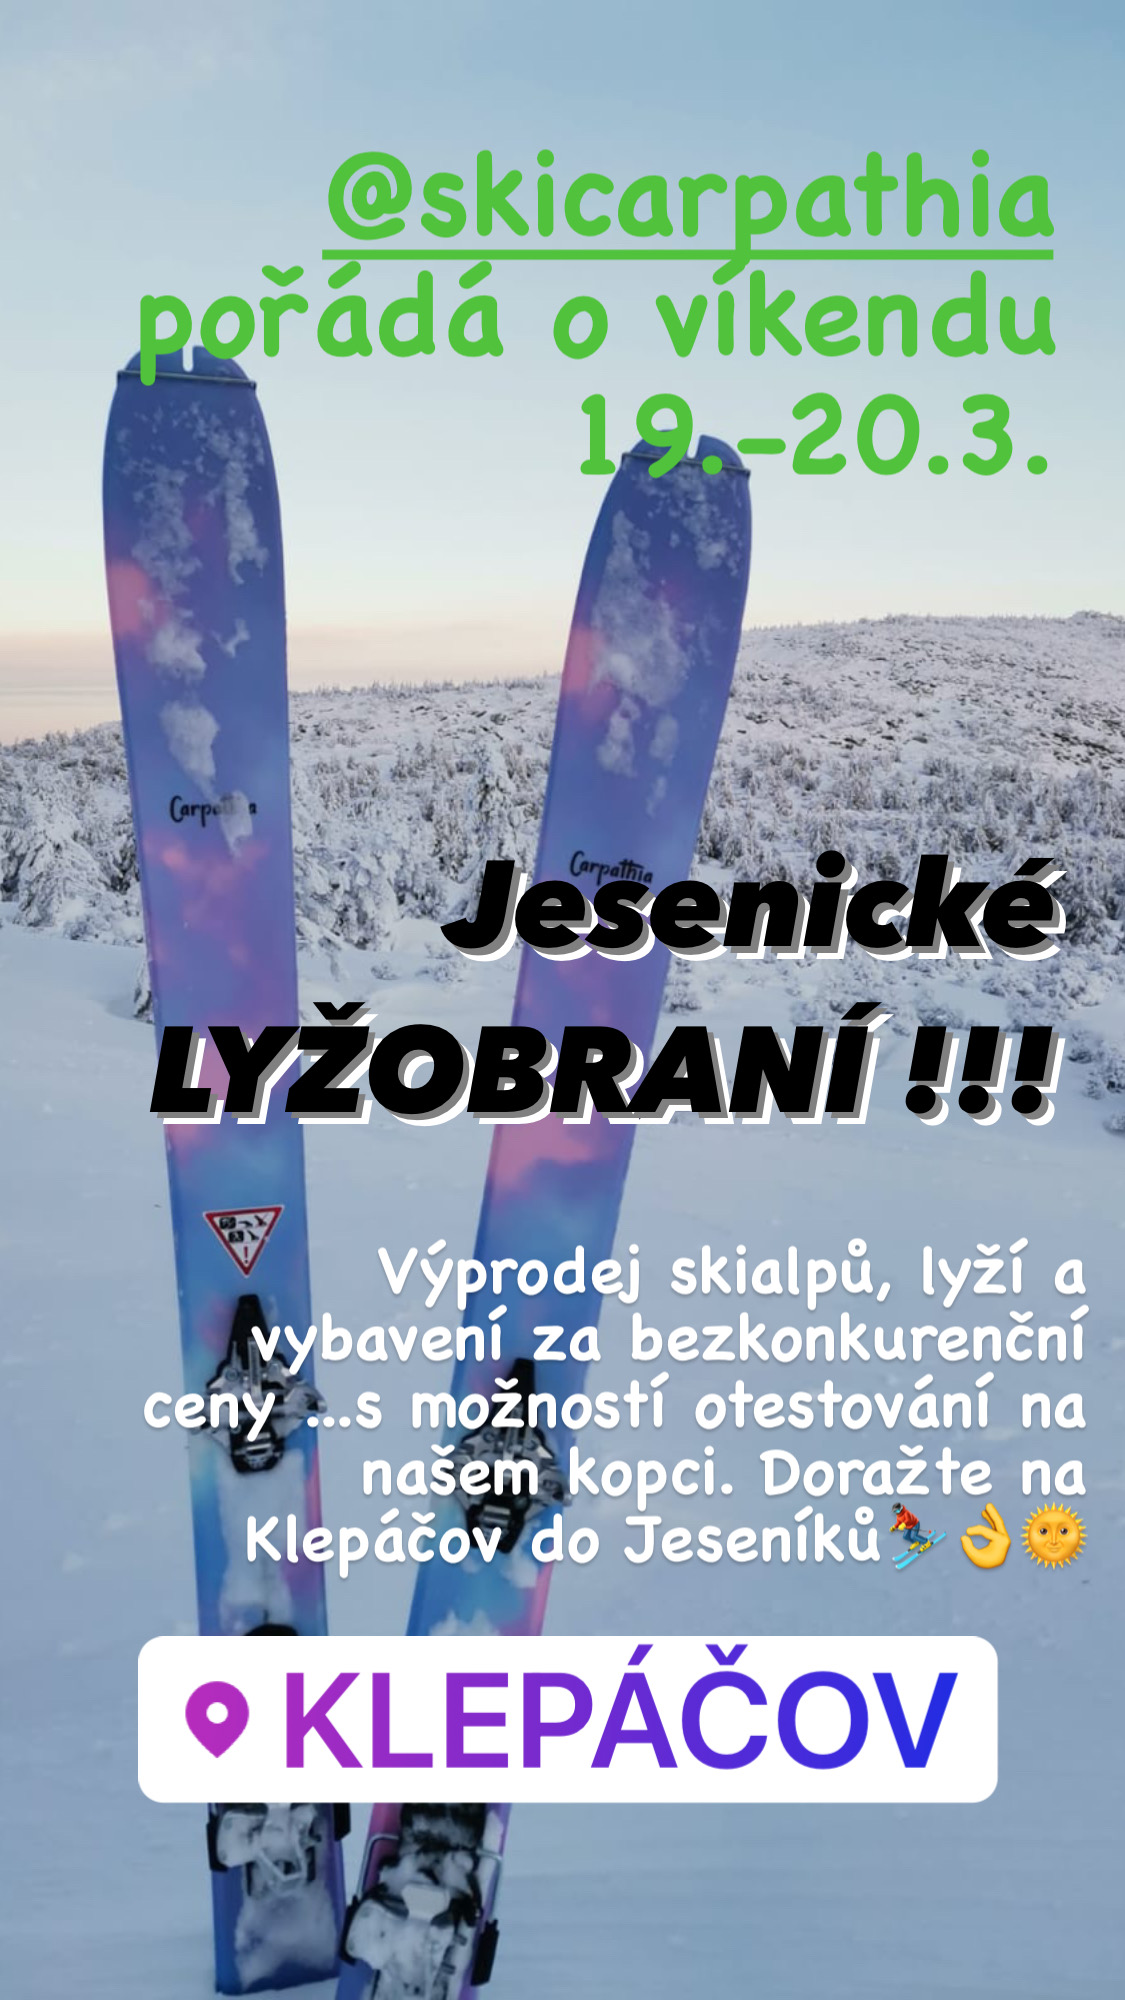 Jesenické lyžobraní 19.–20. 3. 2022